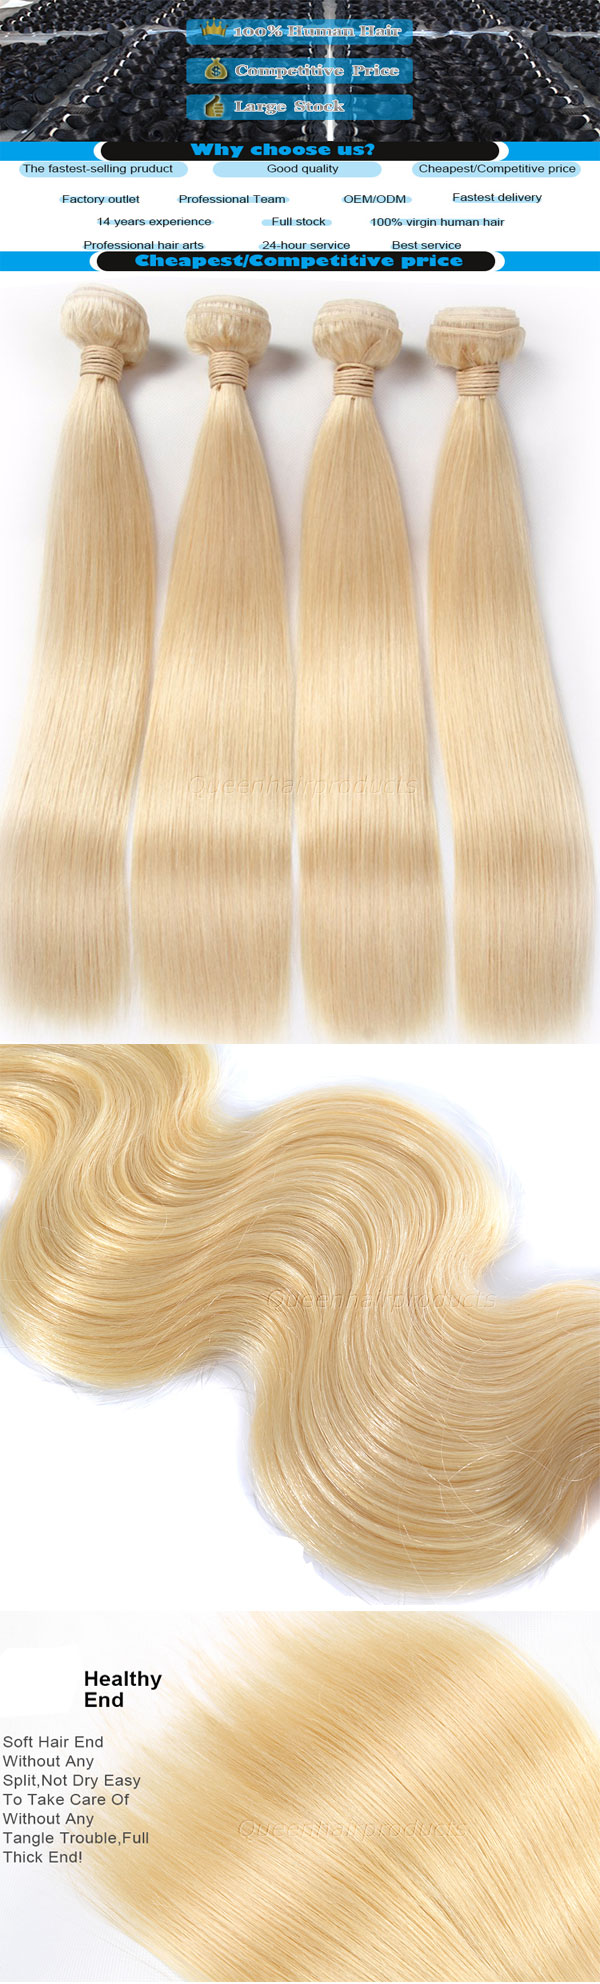 blonde #613 human hair bundles